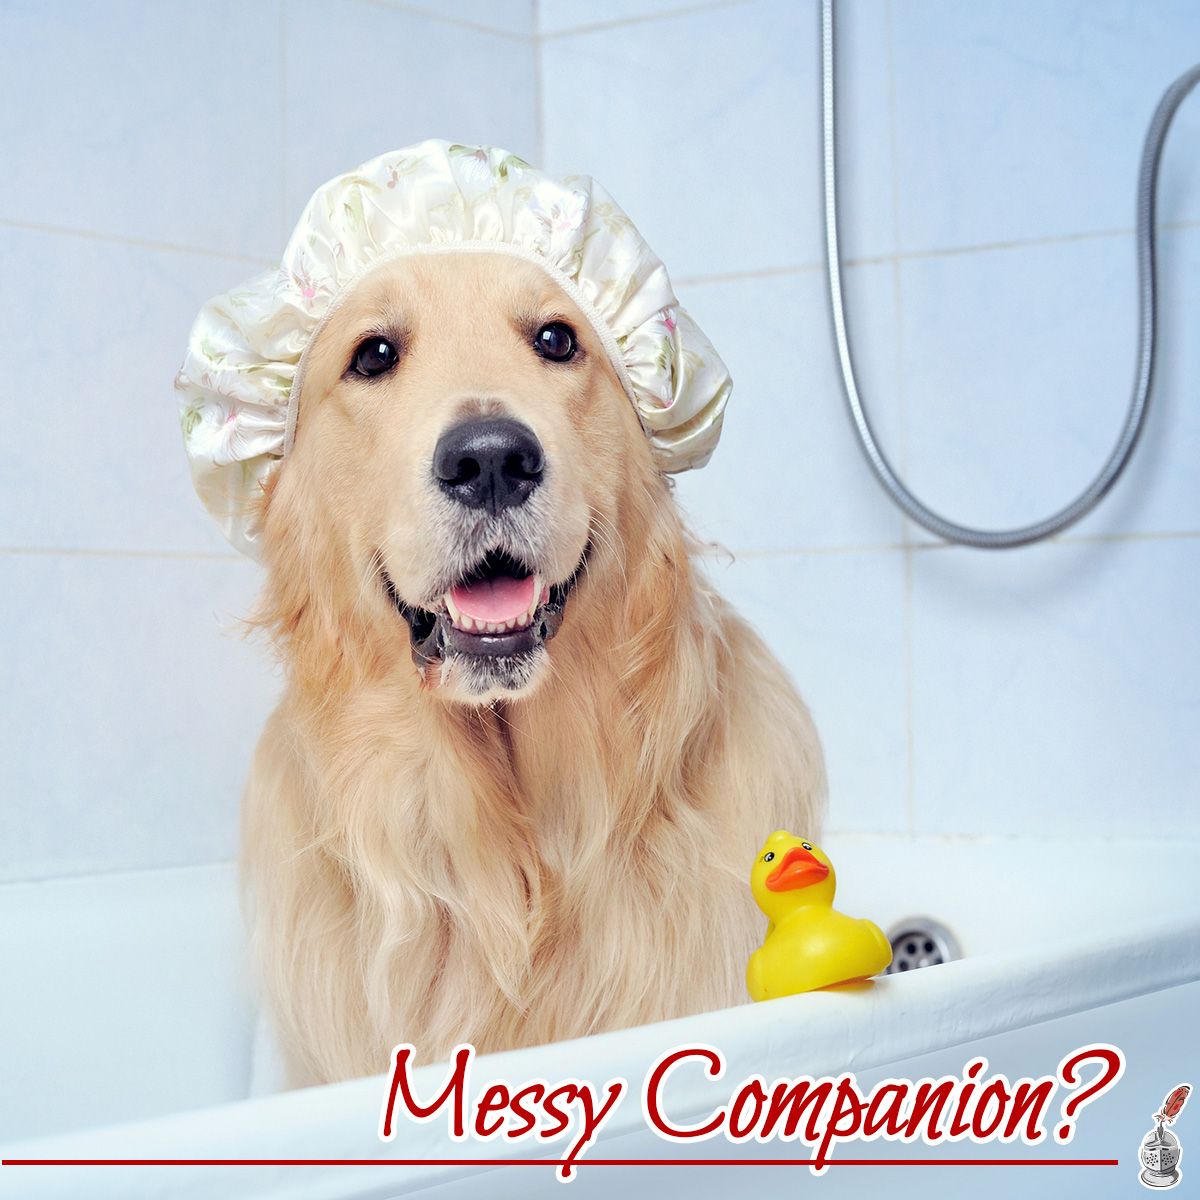 Messy Companion?